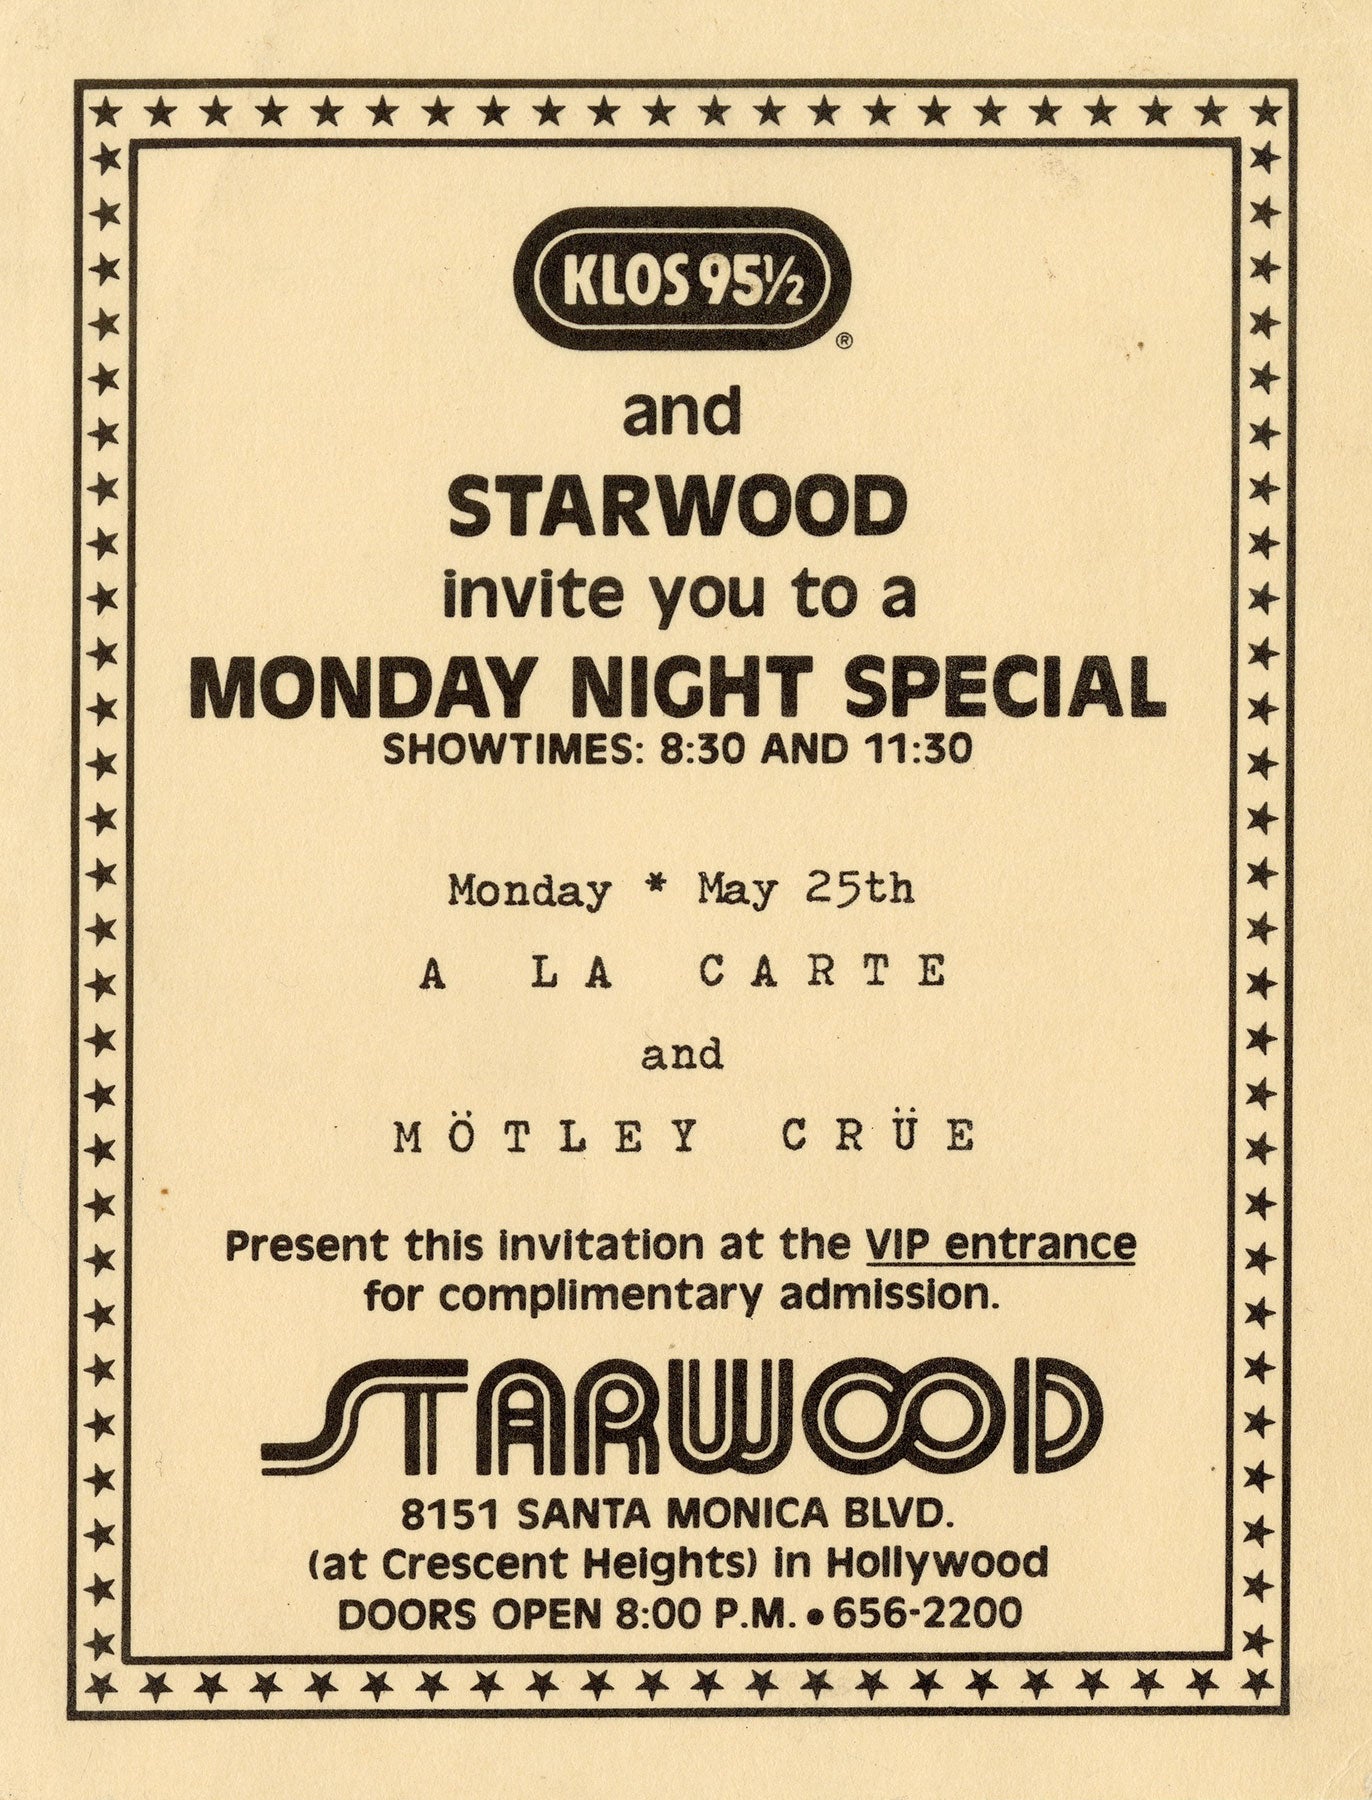 Starwood VIP invitation to see Motley Crue May 25th, 1981